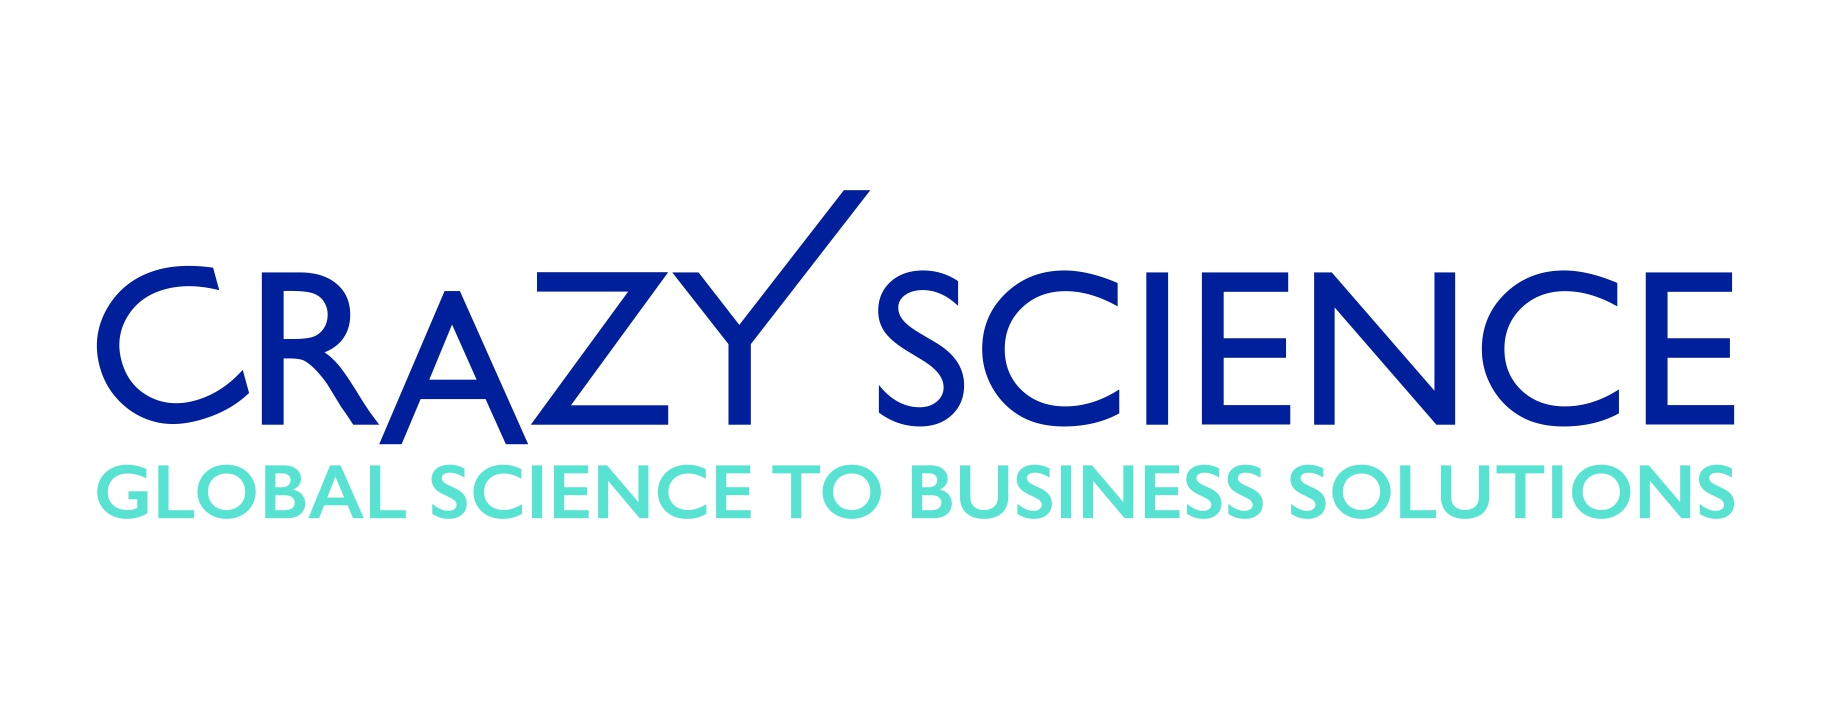 Logo Crazy Science & Business